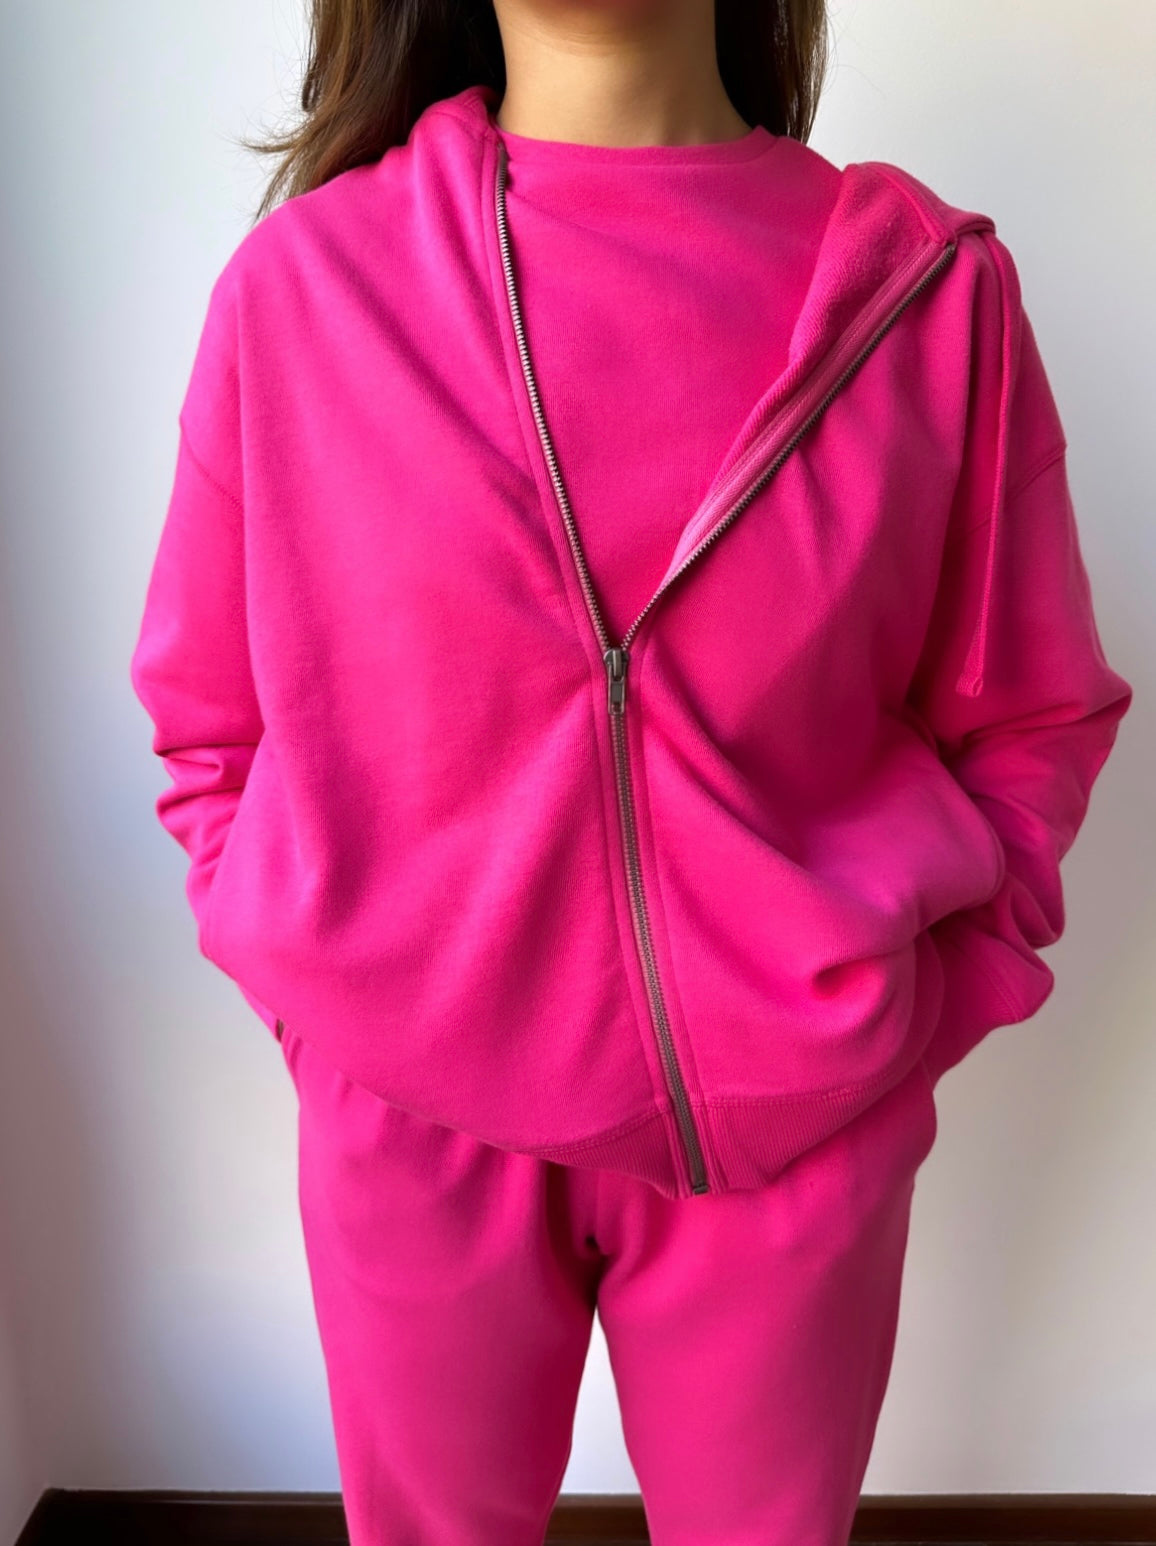 The Zipped Hoodie in Vivid Pink